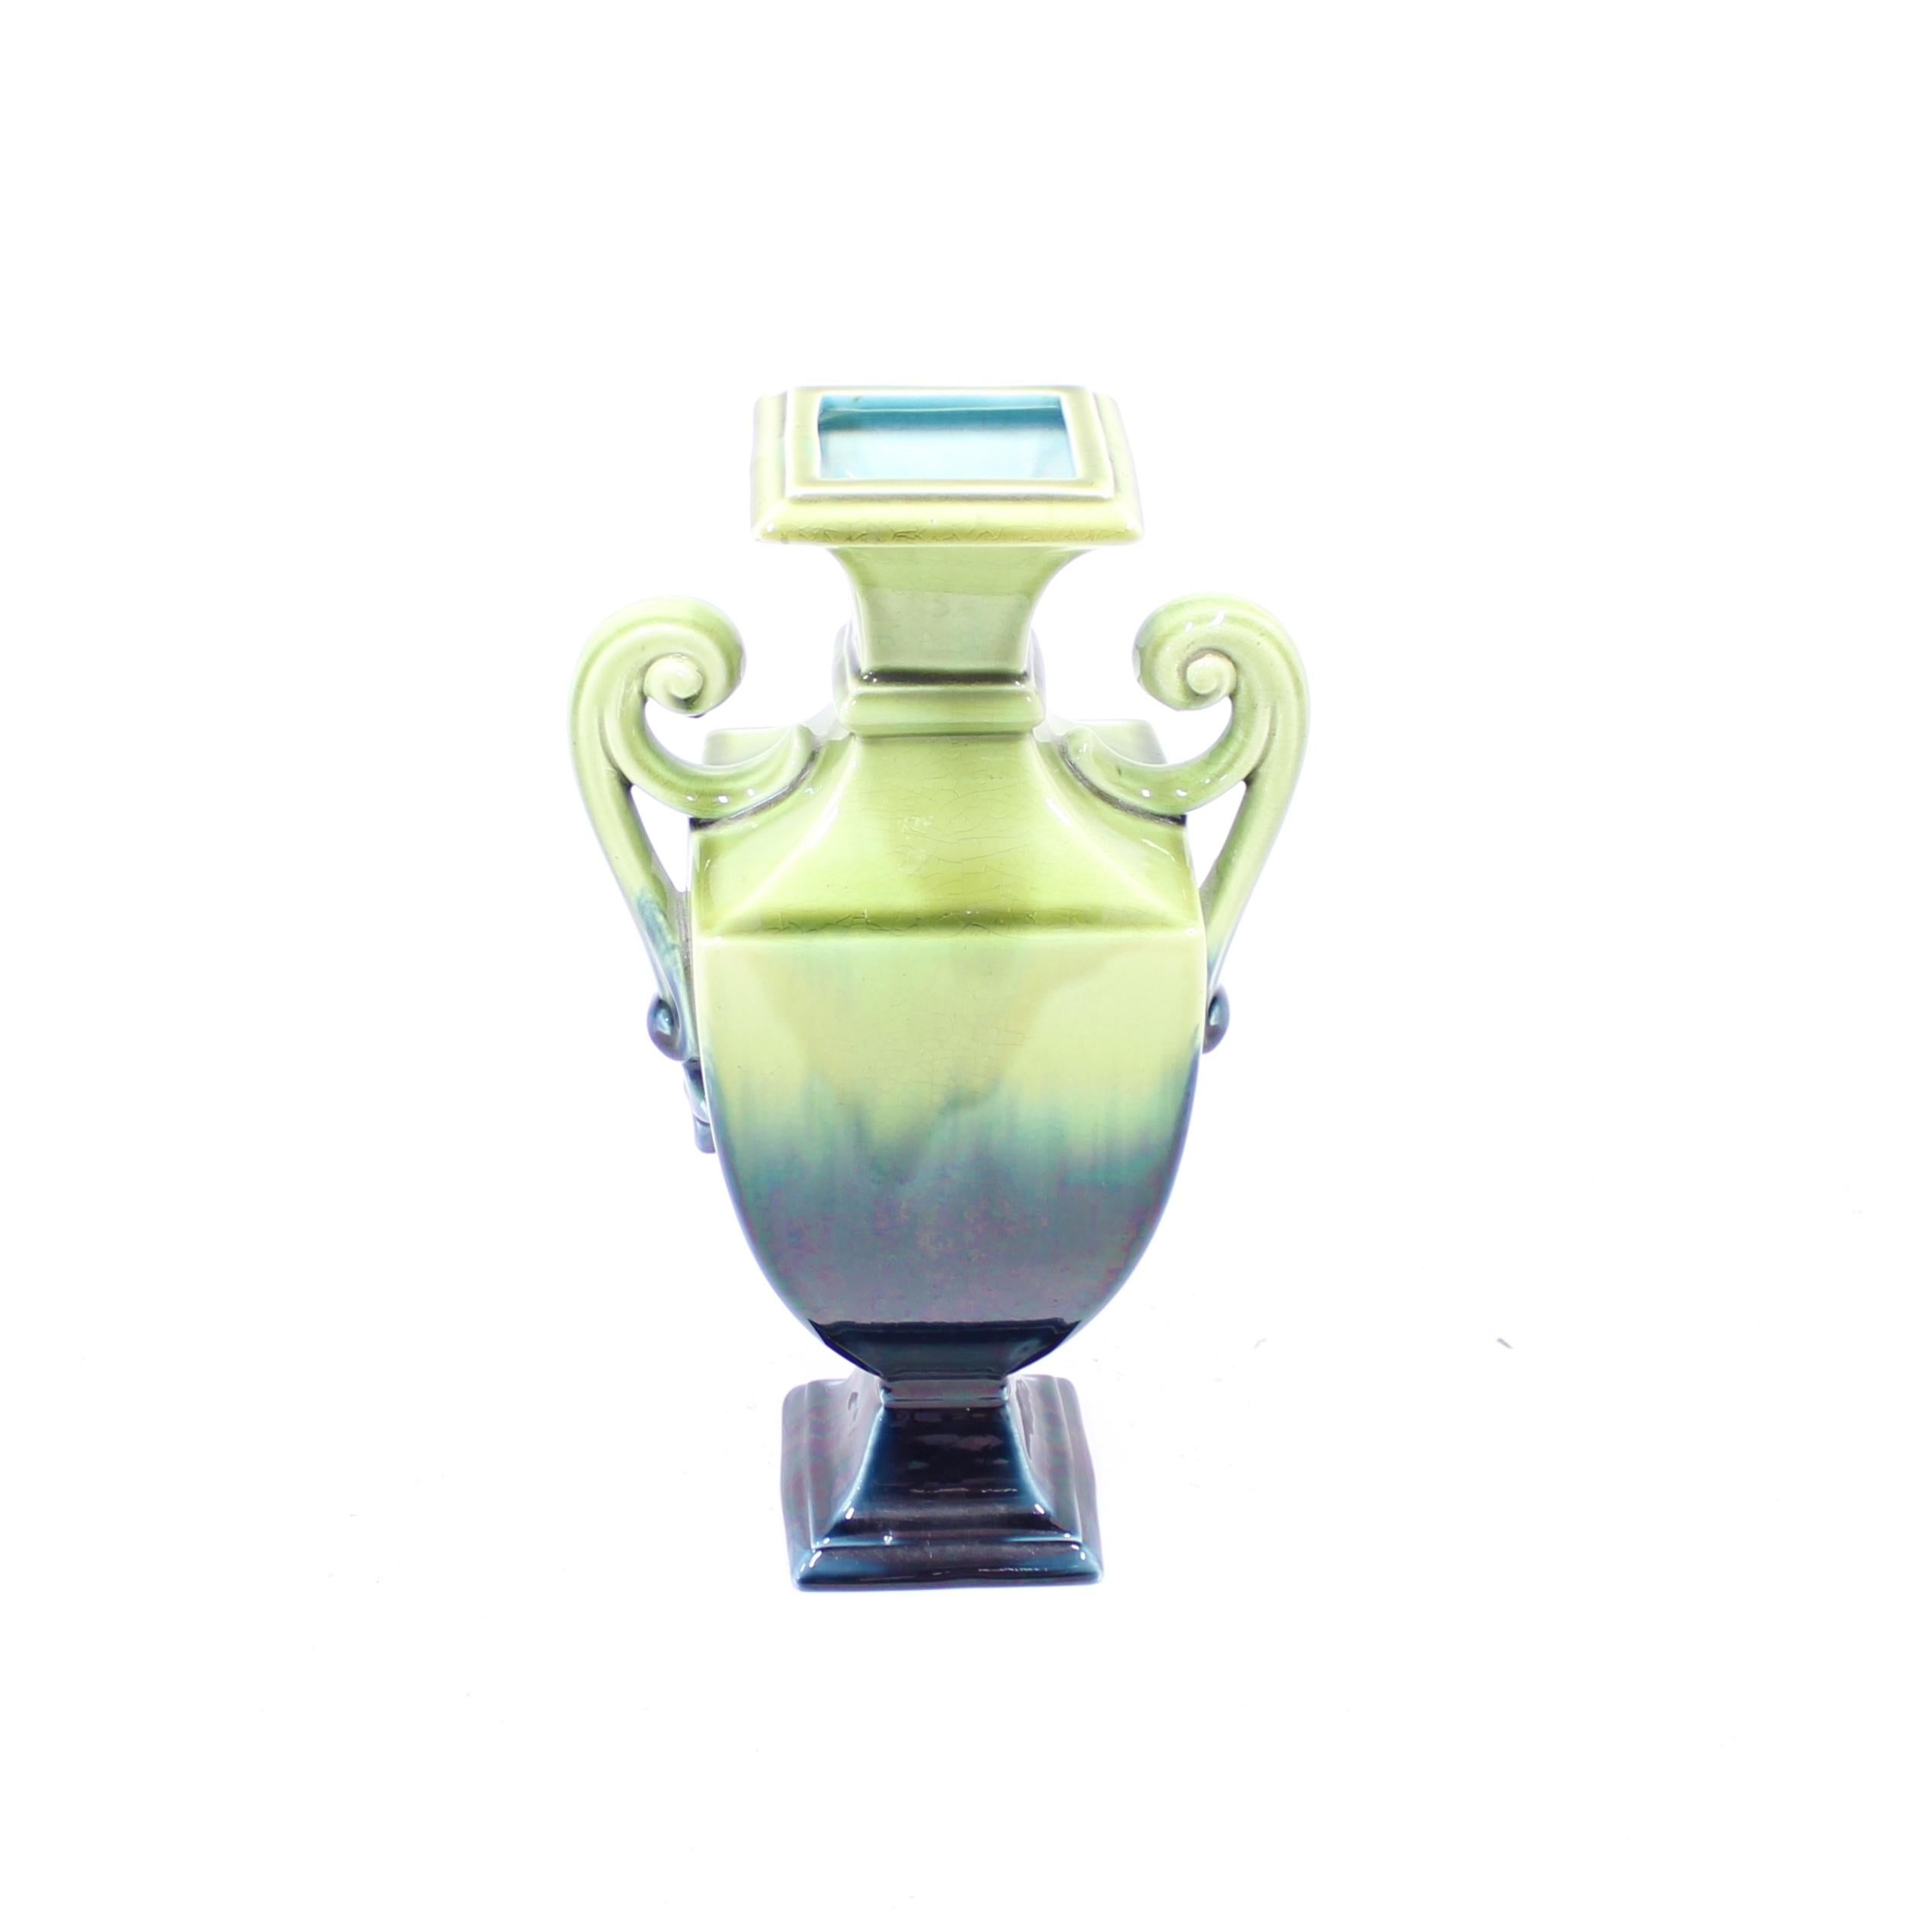 Grand vase / urne en creamware fabriqué par le géant suédois de la porcelaine Rörstrand au début du 20e siècle. Il présente une glaçure verte/bleue qui s'estompe d'une teinte foncée à une teinte claire. Intérieur avec glaçure turquoise. Très bon